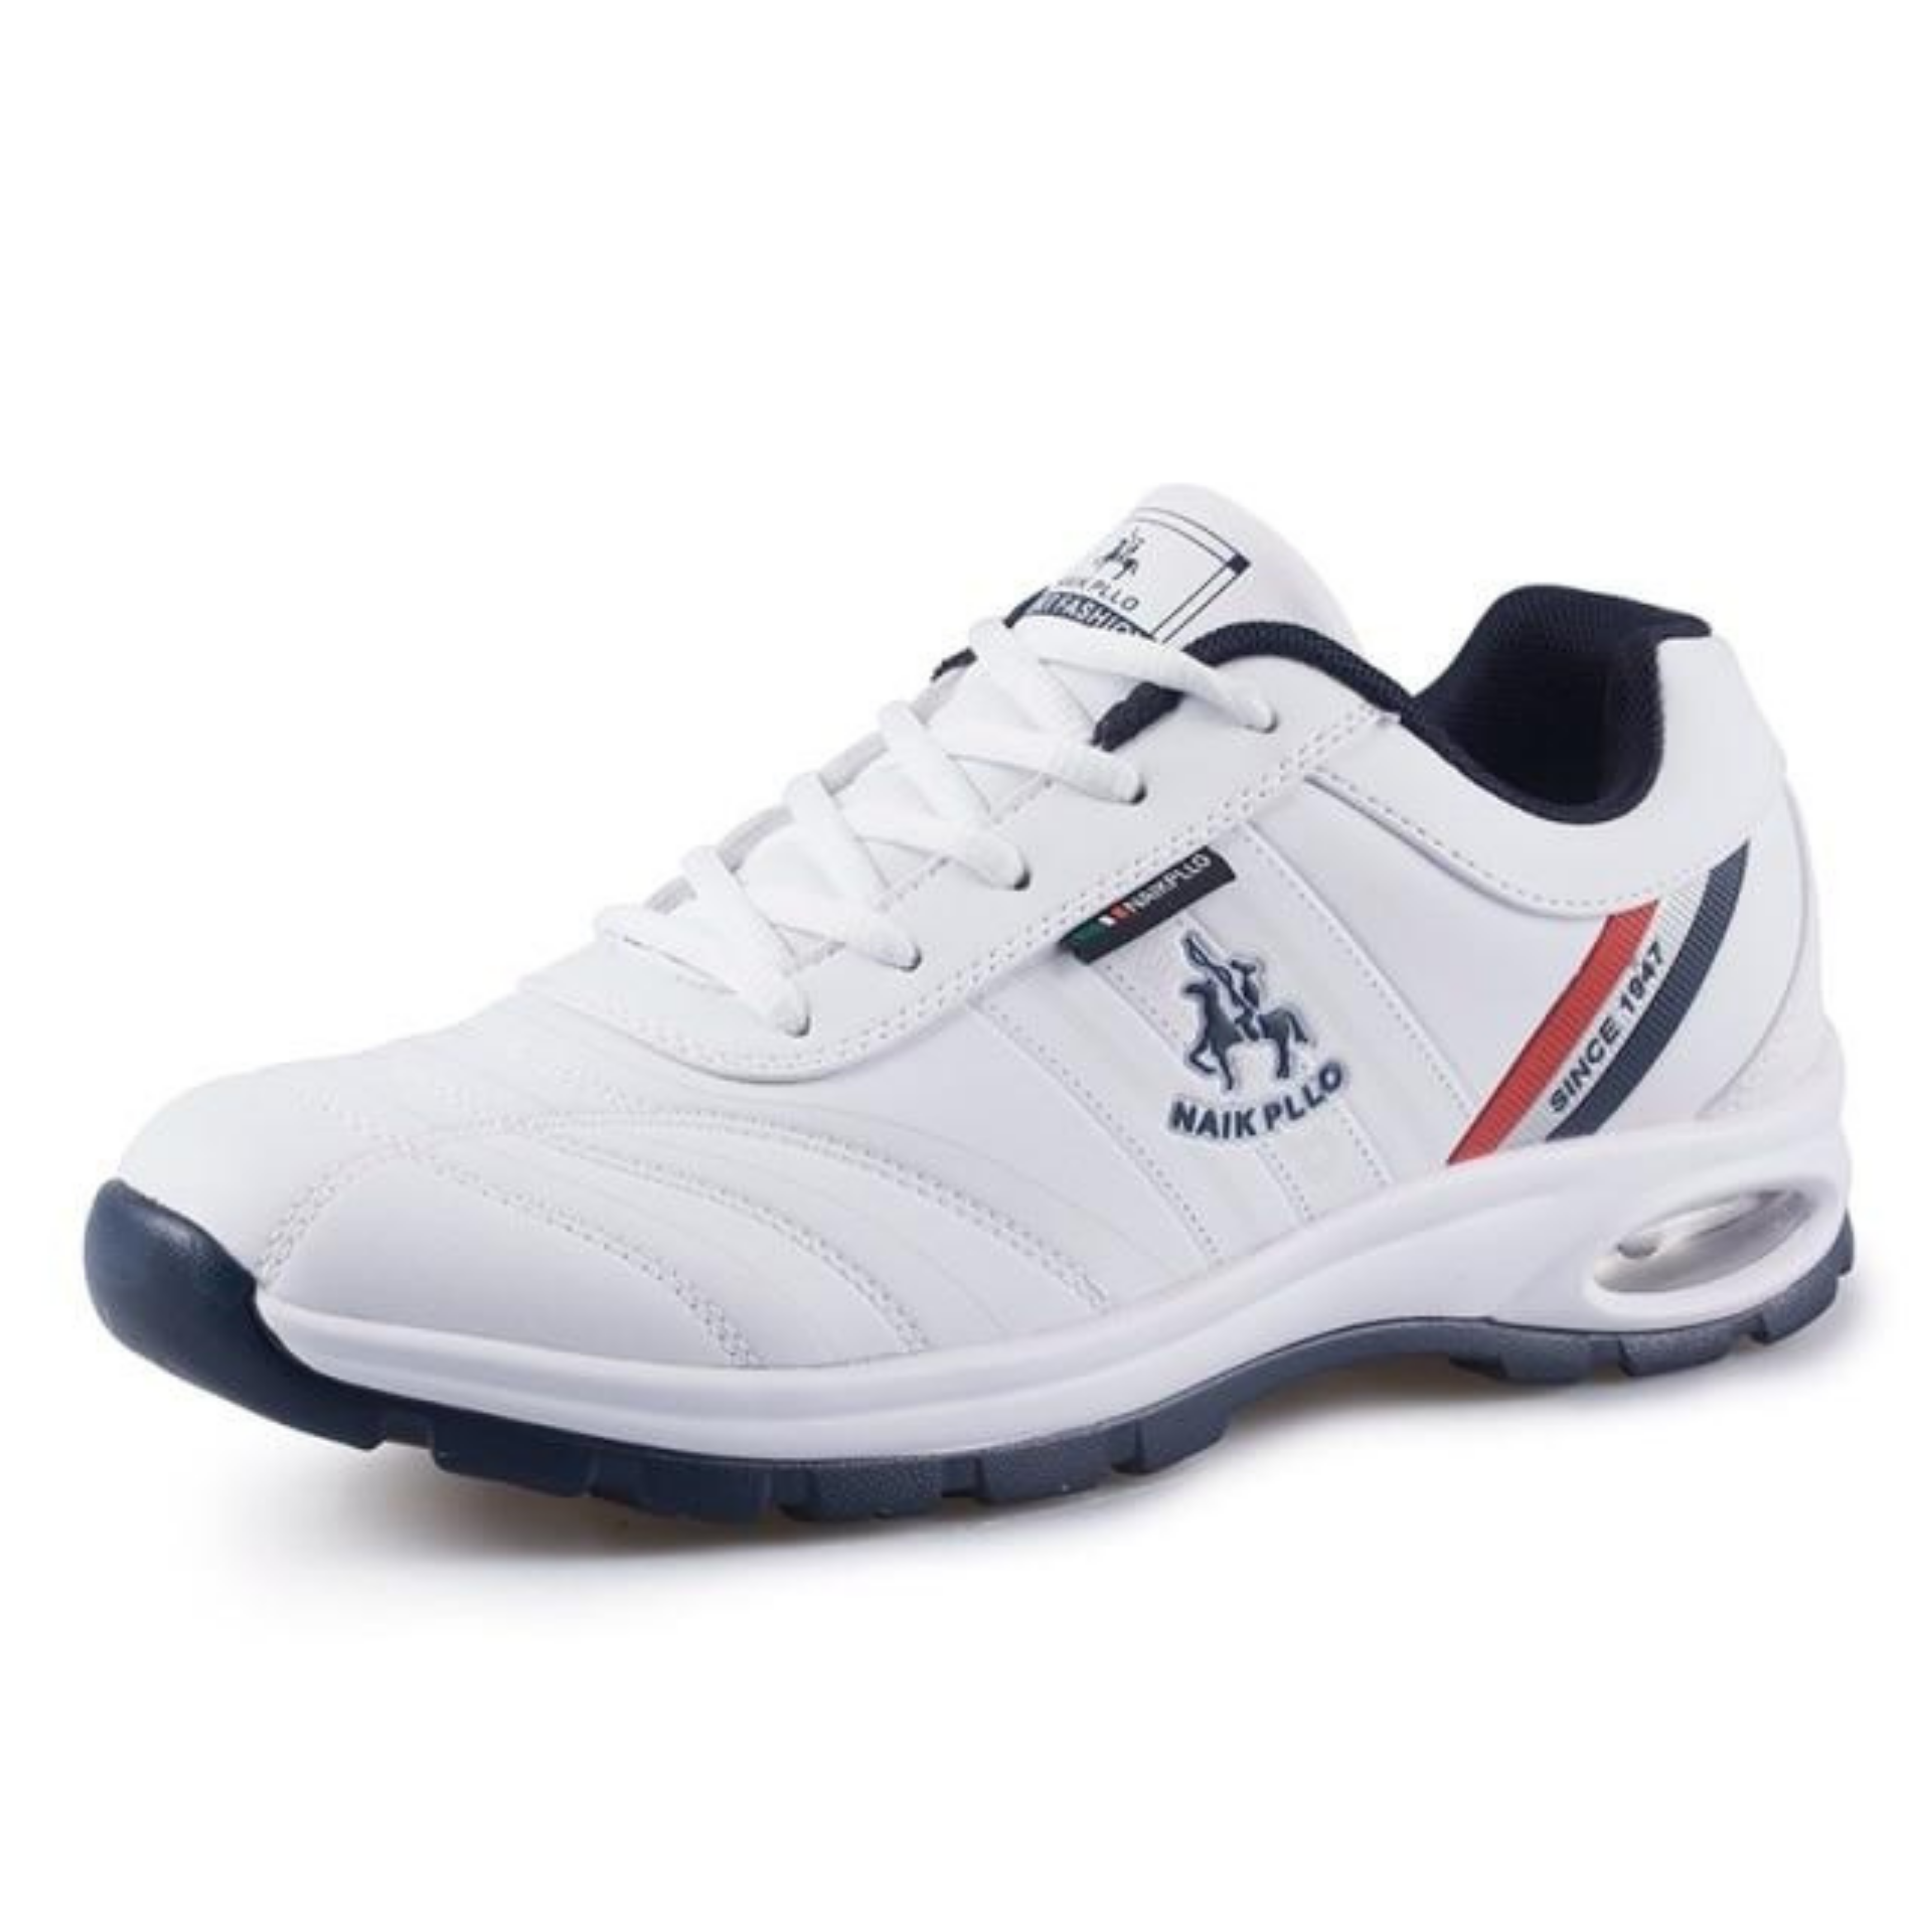 Men's Lightweight Golf Shoes - alyahstore